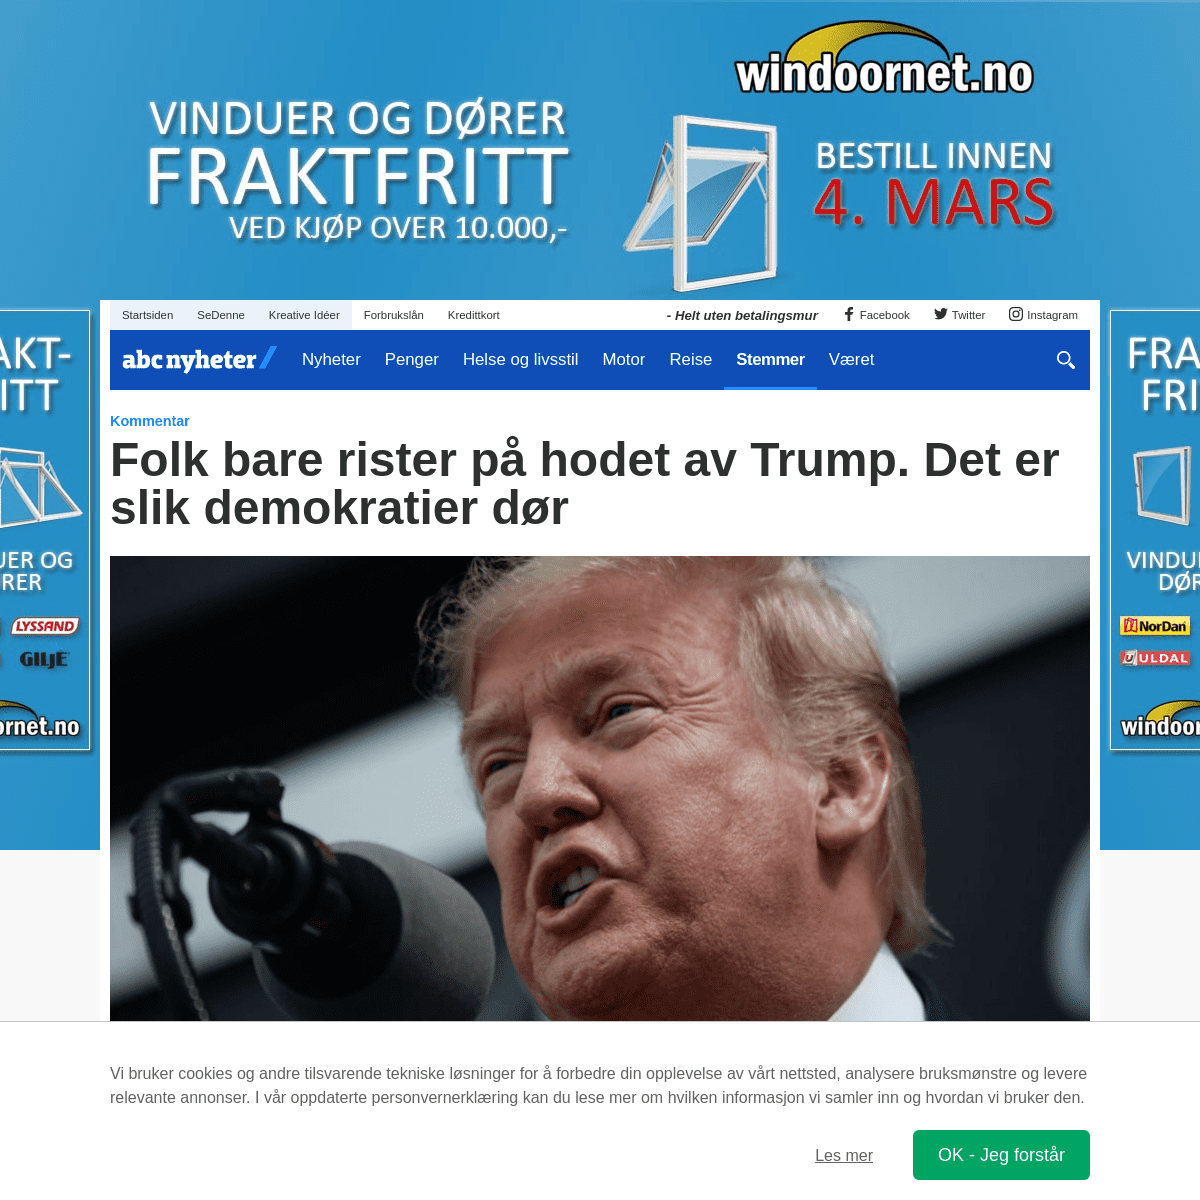 A complete backup of www.abcnyheter.no/stemmer/2020/02/17/195649864/folk-bare-rister-pa-hodet-av-trump-det-er-slik-demokratier-d